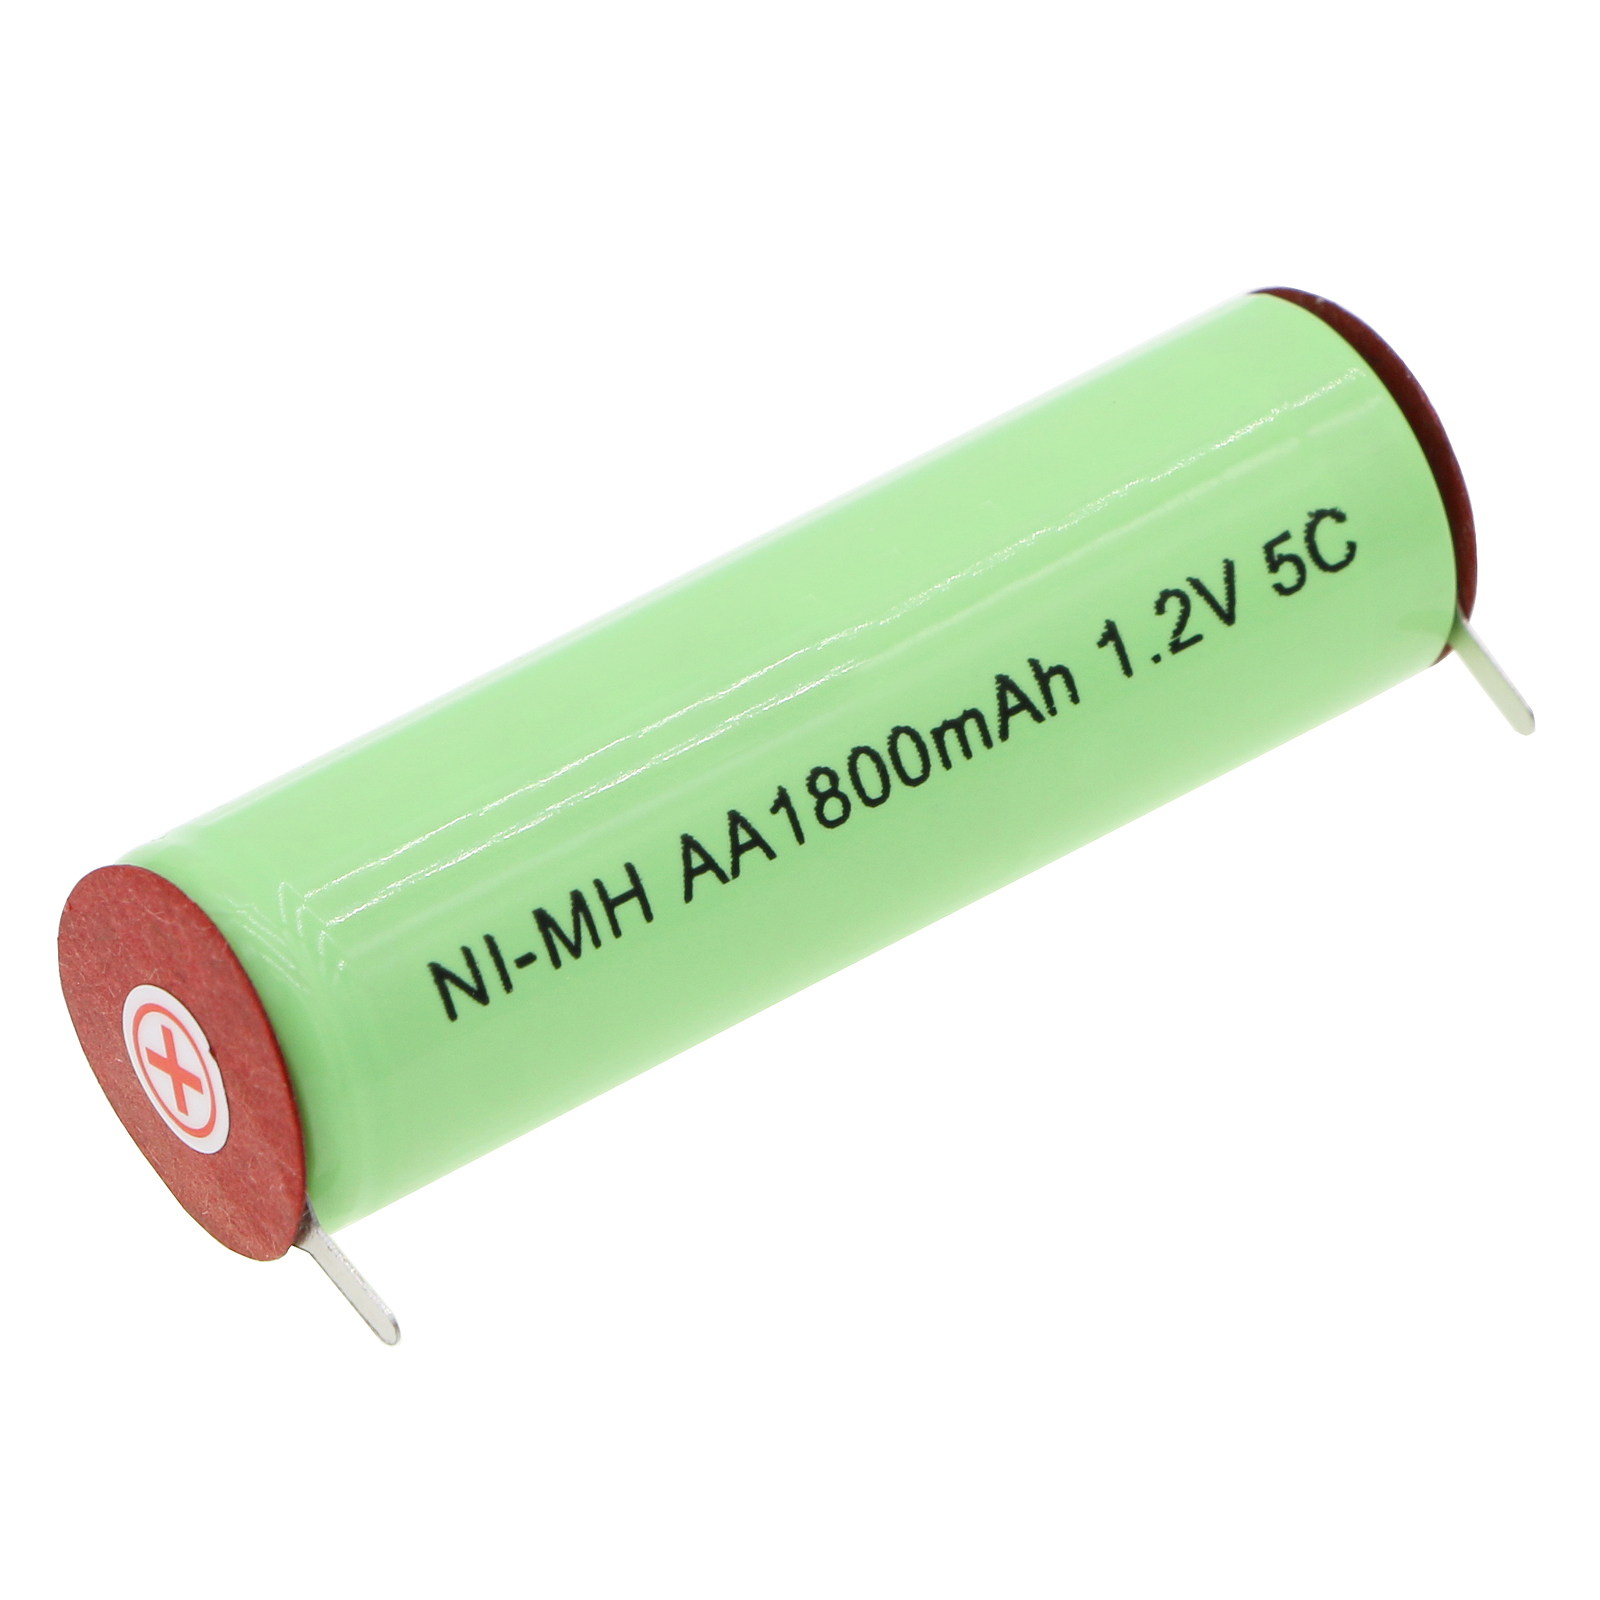 Batteries for GenioShaver